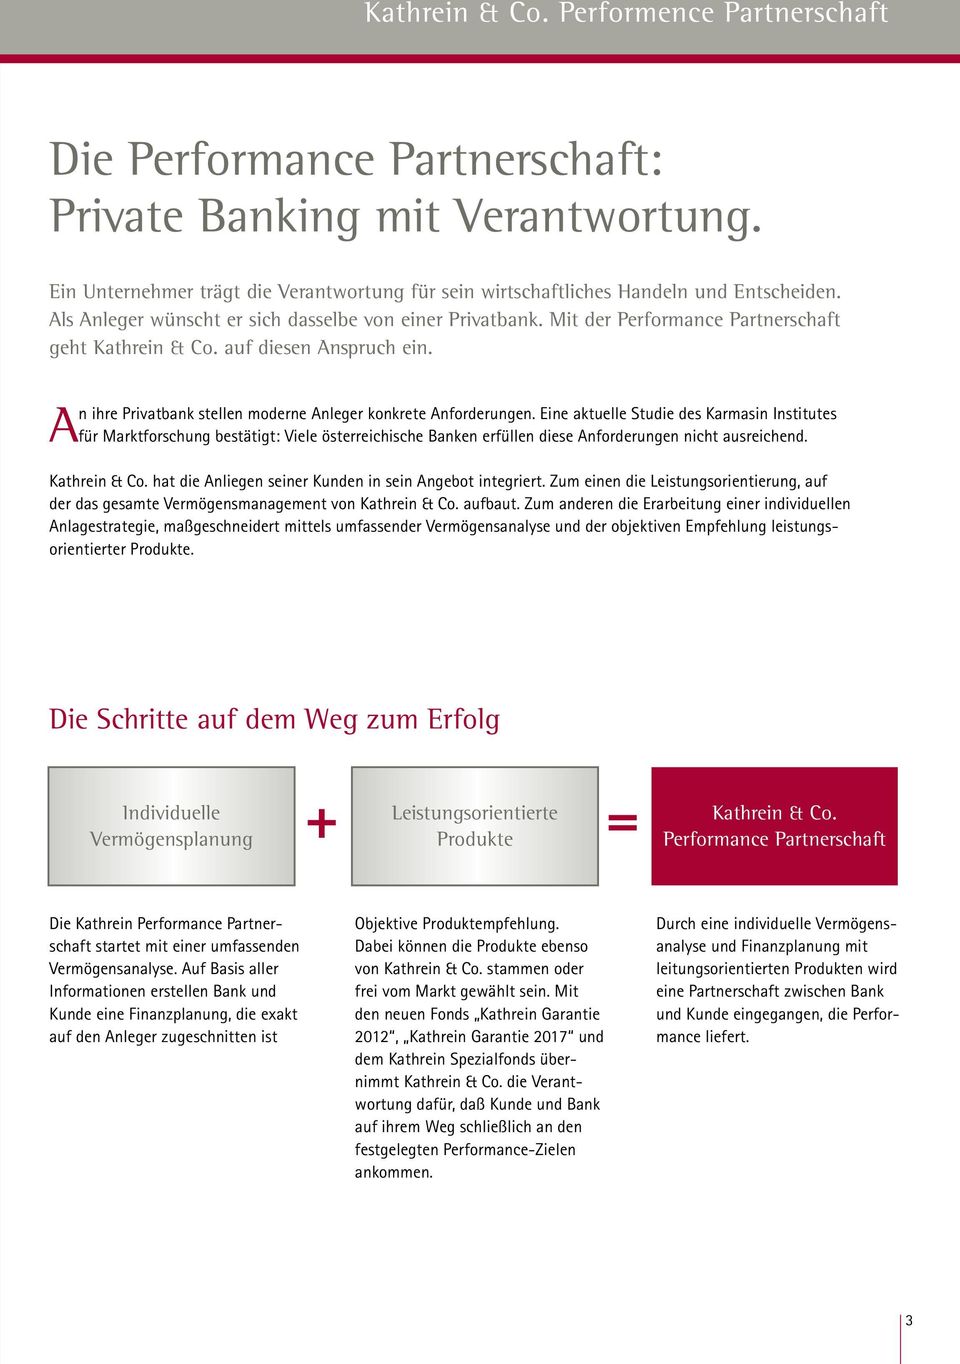 Eine aktuelle Studie des Karmasin Institutes für Marktforschung bestätigt: Viele österreichische Banken erfüllen diese Anforderungen nicht ausreichend. Kathrein & Co.